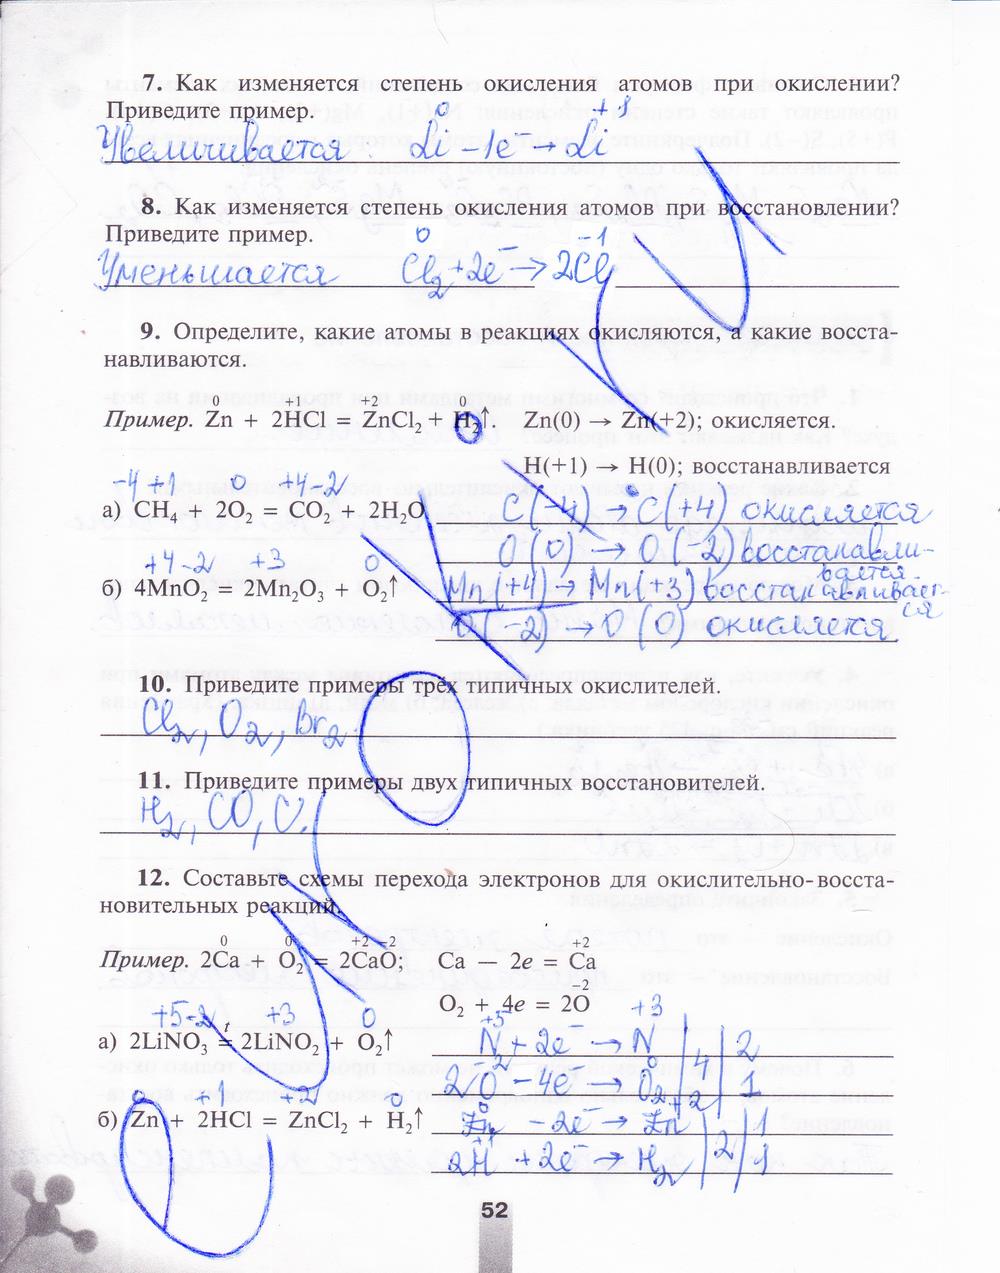 гдз 8 класс рабочая тетрадь страница 52 химия Микитюк